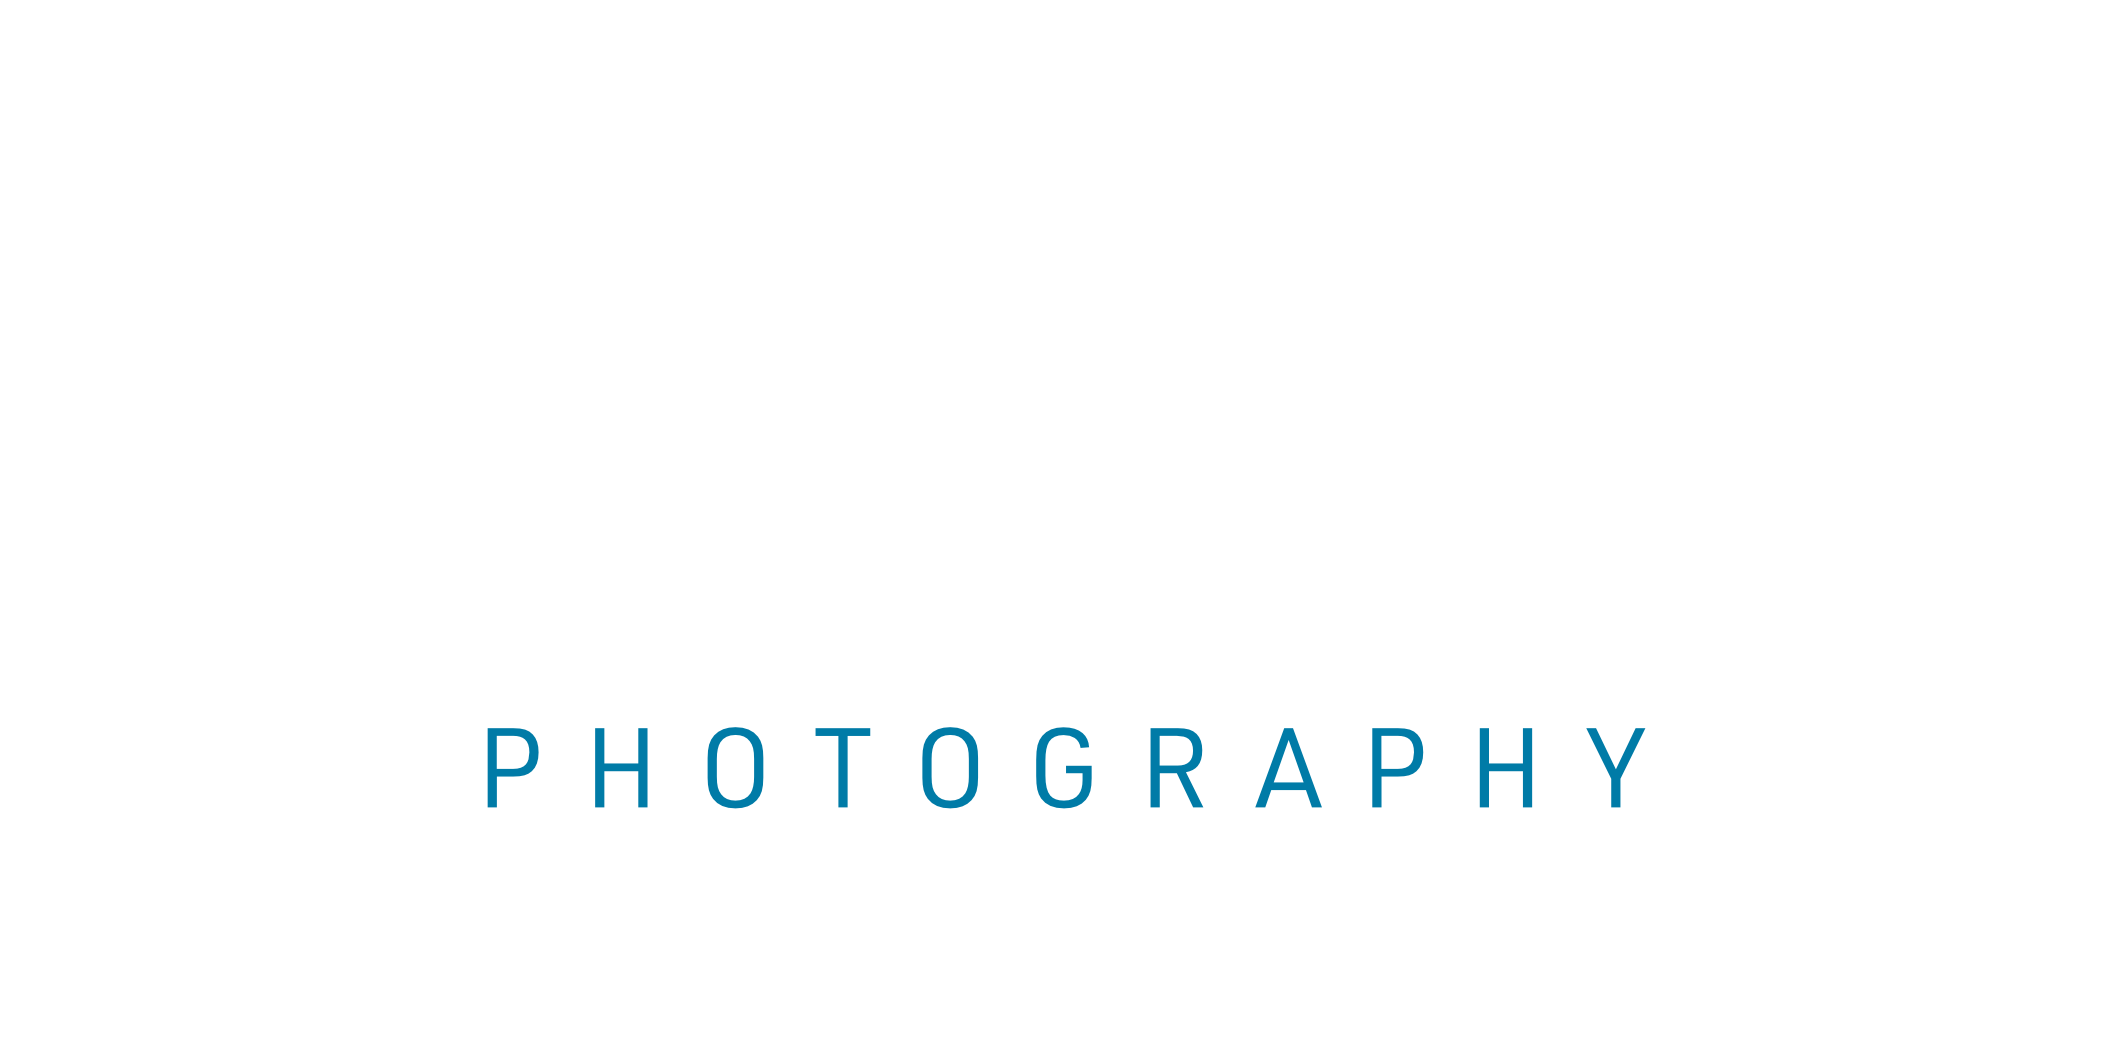 Glenn Jodun Photography